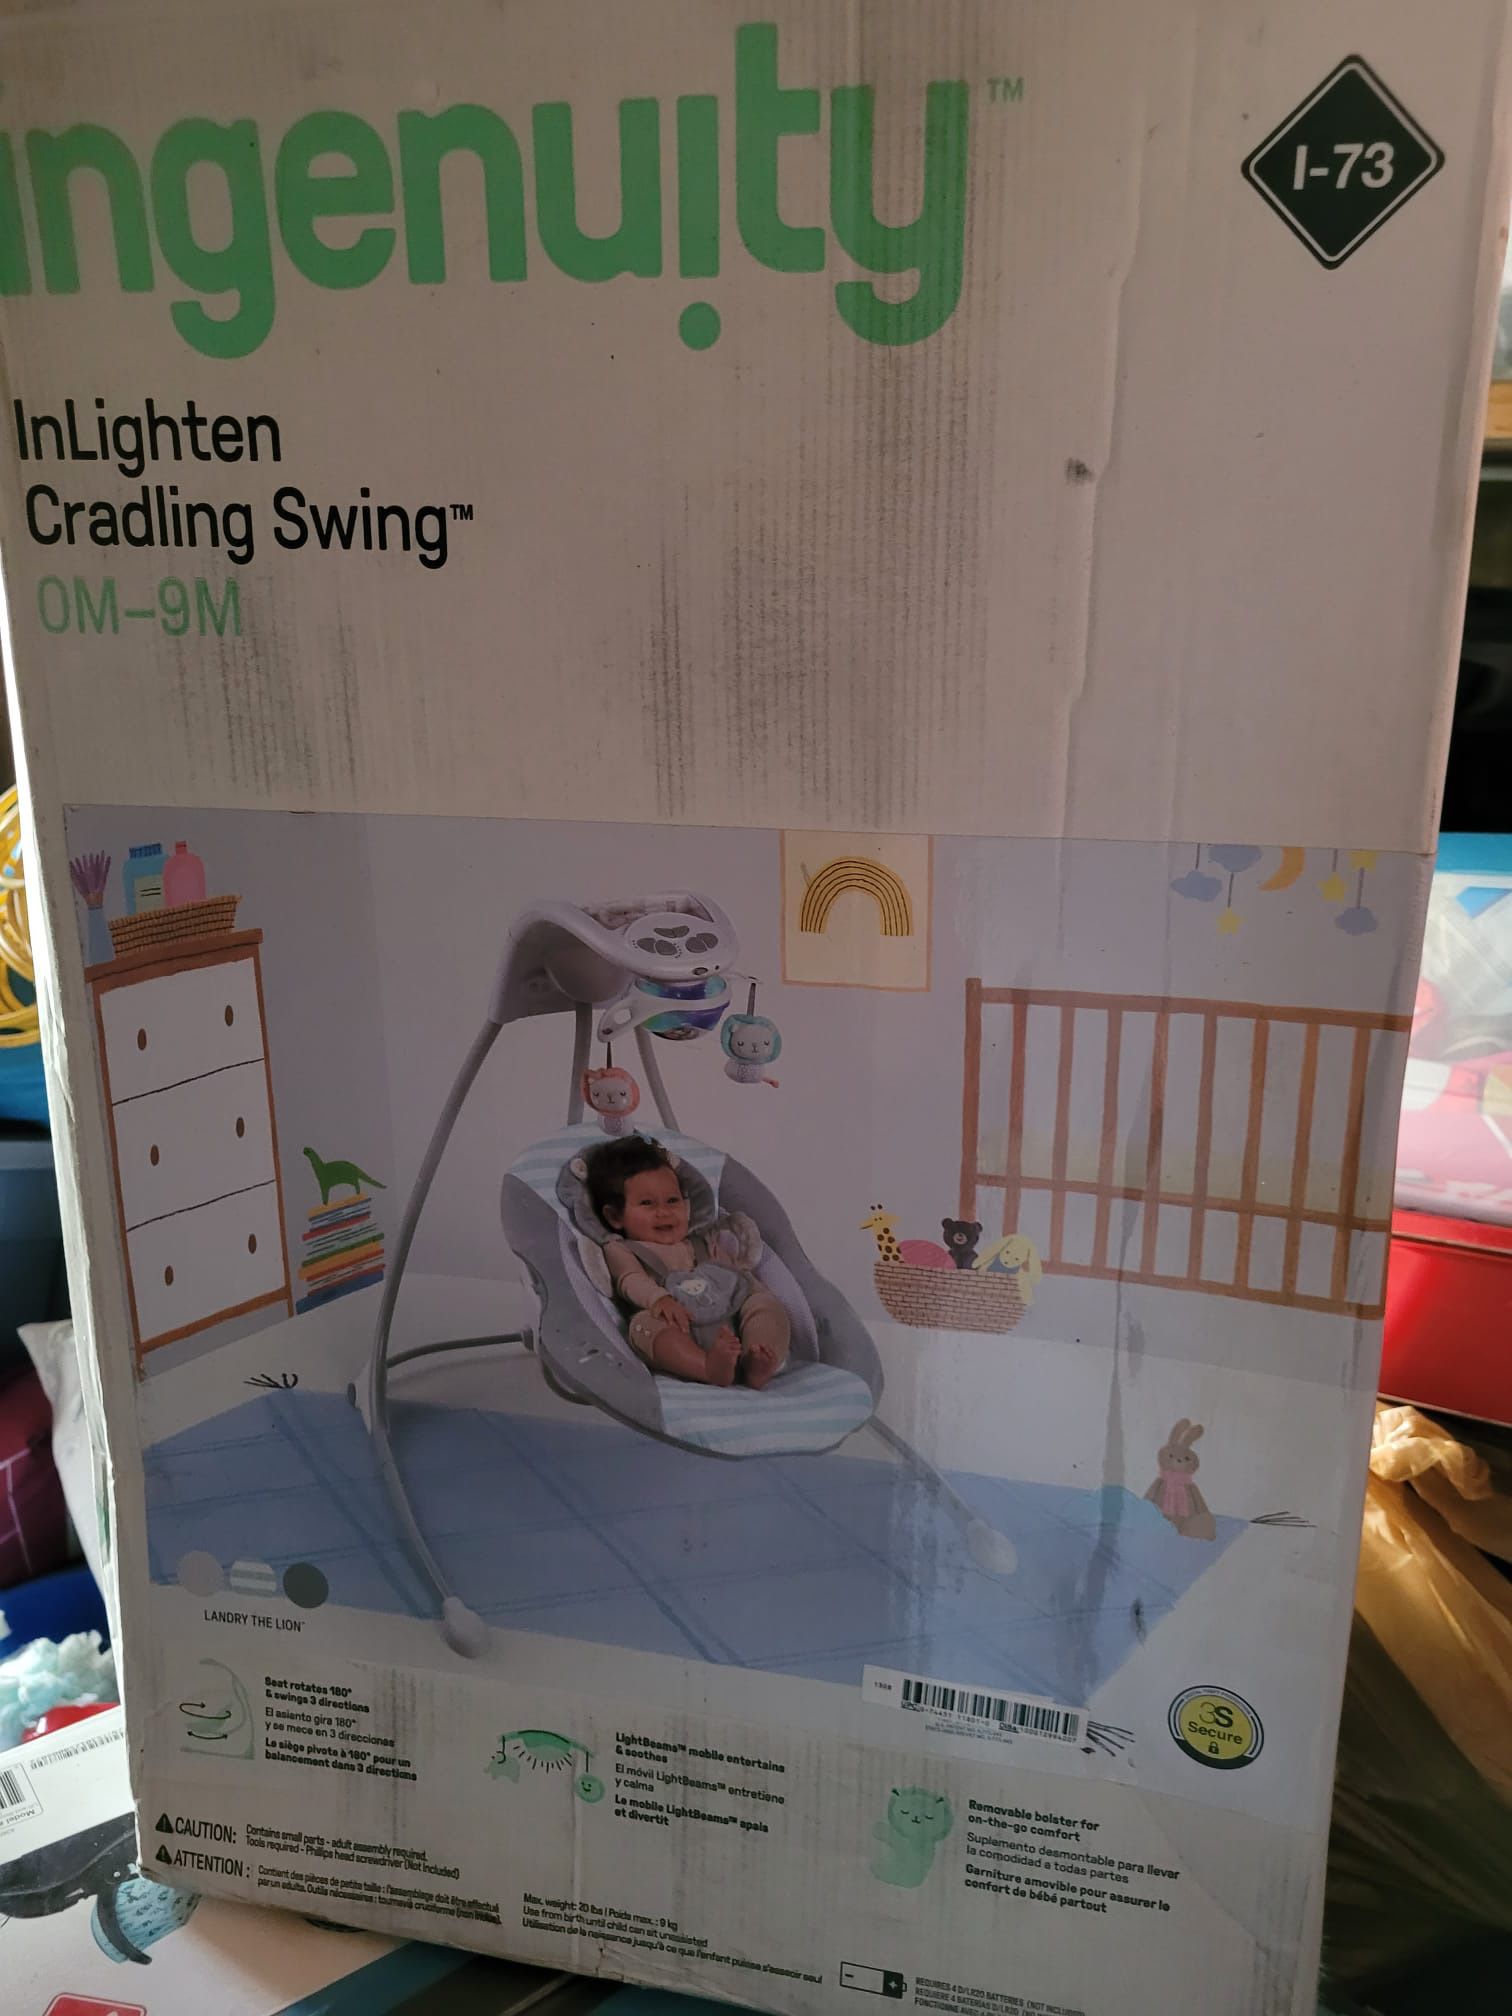 Baby Swing/ ingenuity inlighten cradling swing